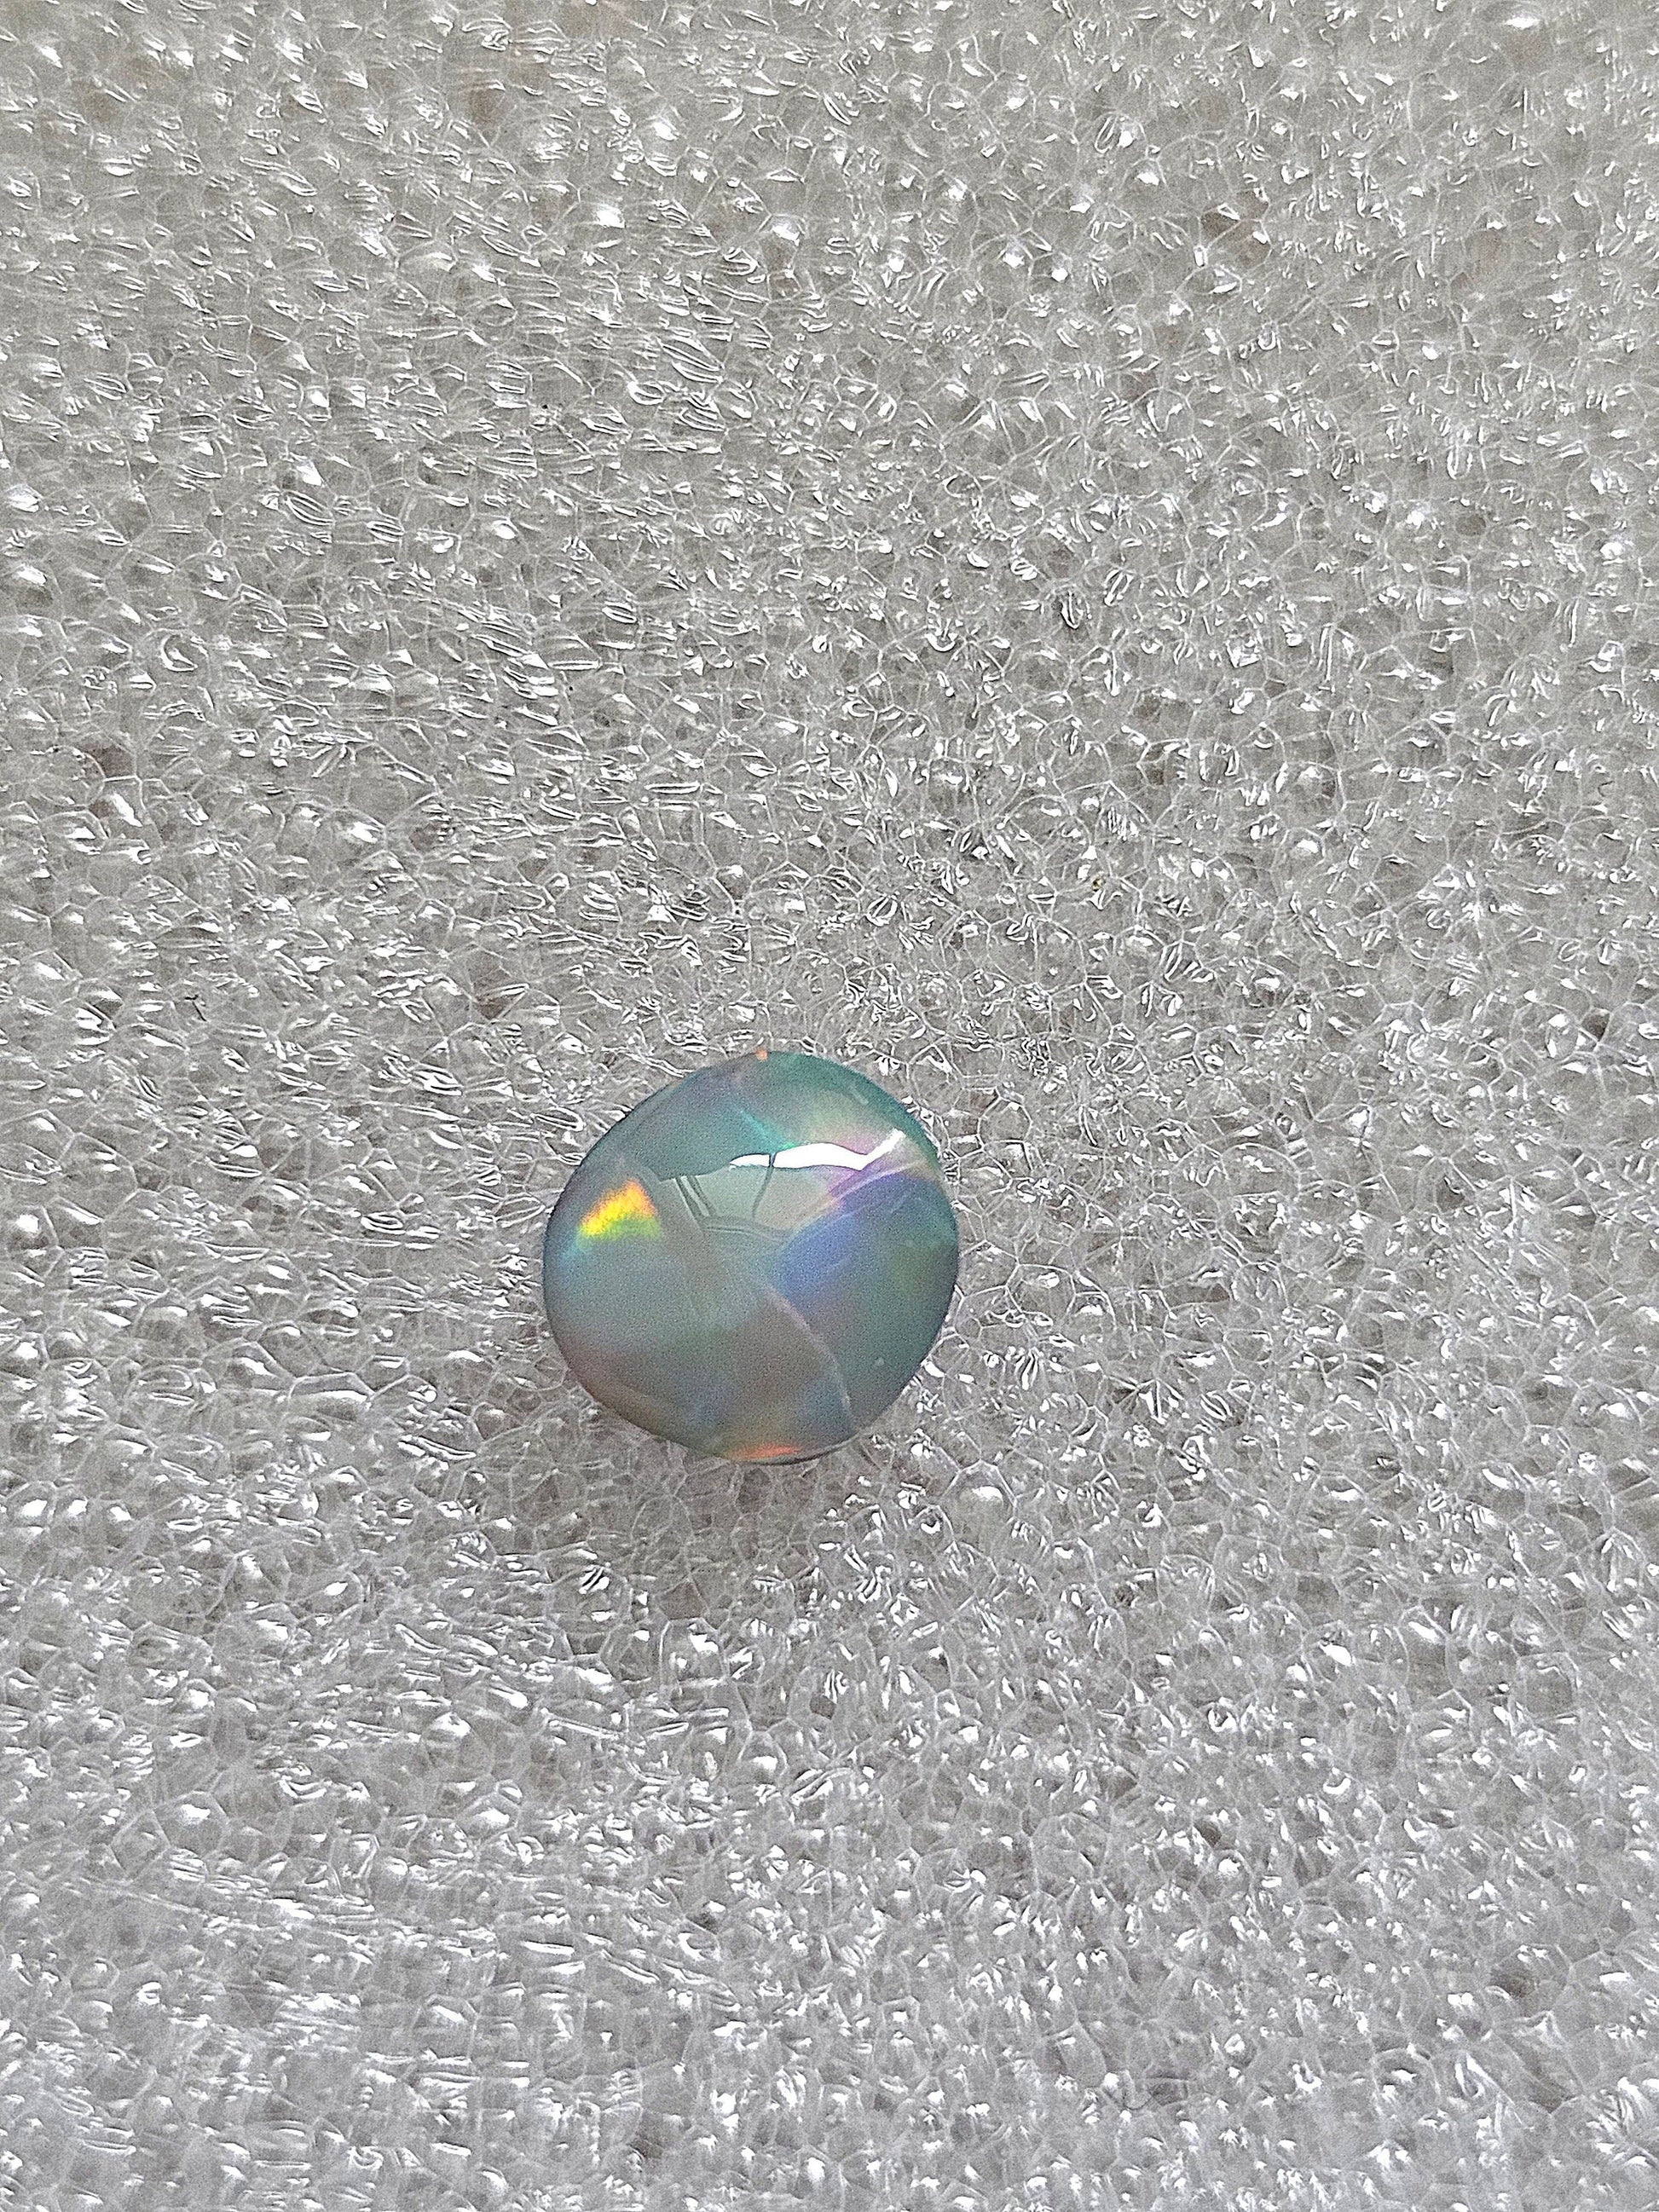 Australian doublet opal / roundish black opal / Lightning ridge Opal NSW